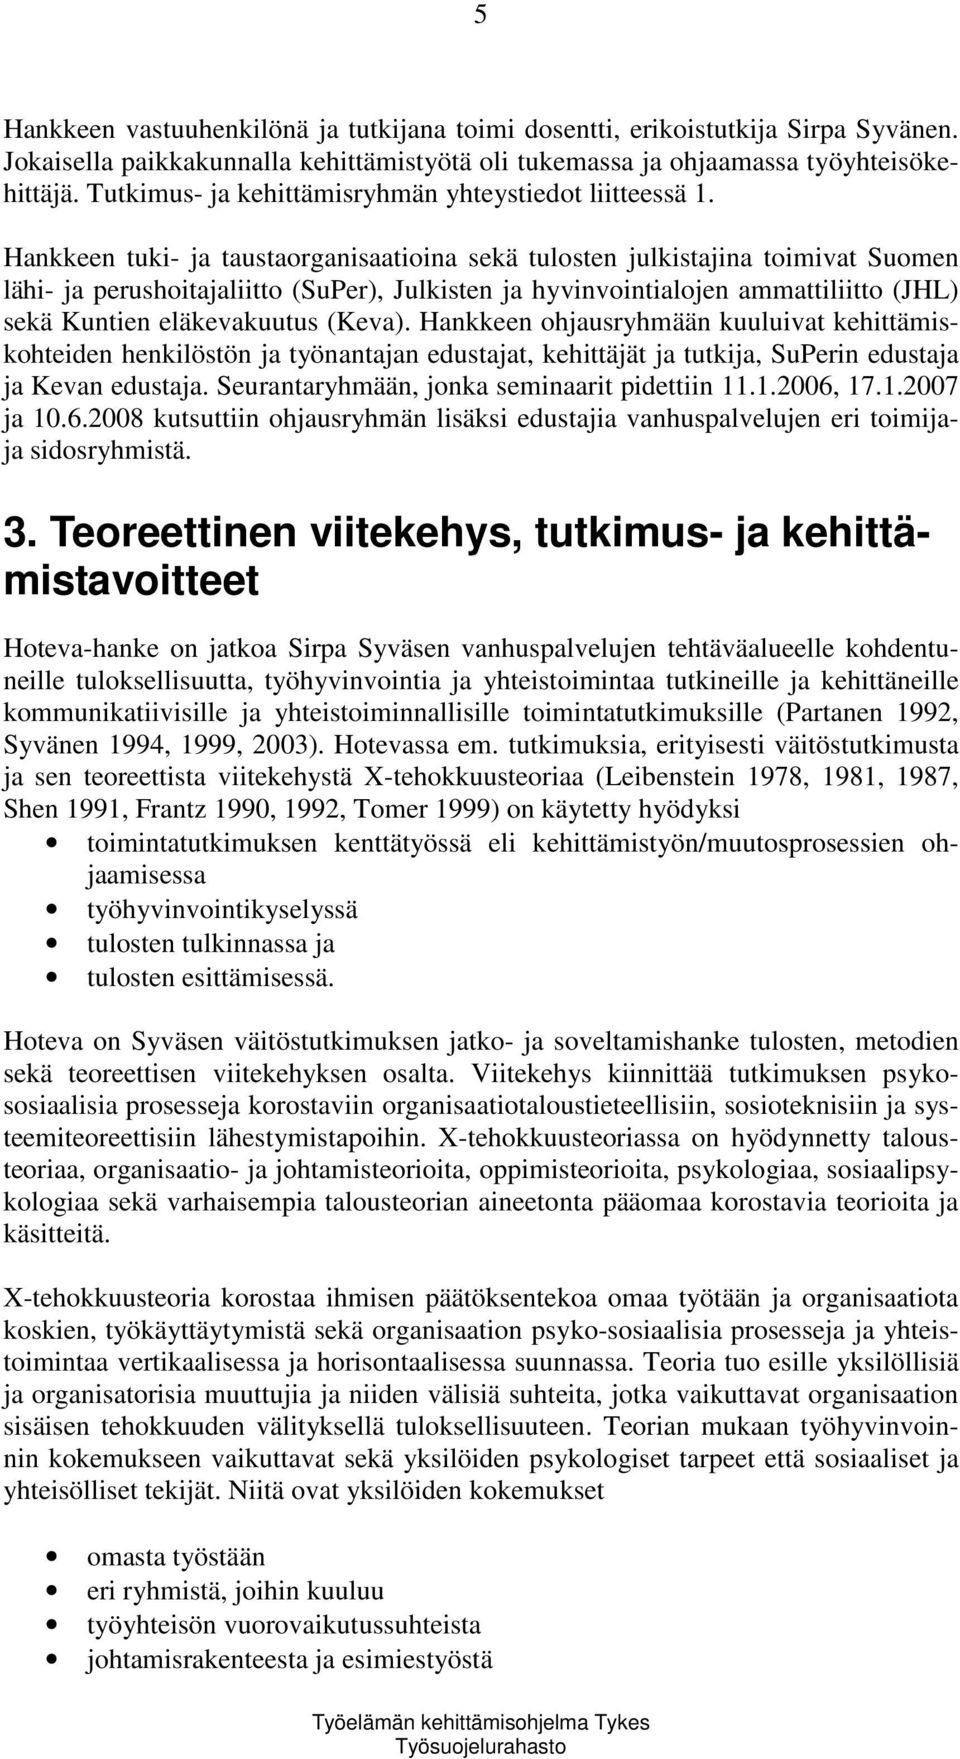 Hankkeen tuki- ja taustaorganisaatioina sekä tulosten julkistajina toimivat Suomen lähi- ja perushoitajaliitto (SuPer), Julkisten ja hyvinvointialojen ammattiliitto (JHL) sekä Kuntien eläkevakuutus